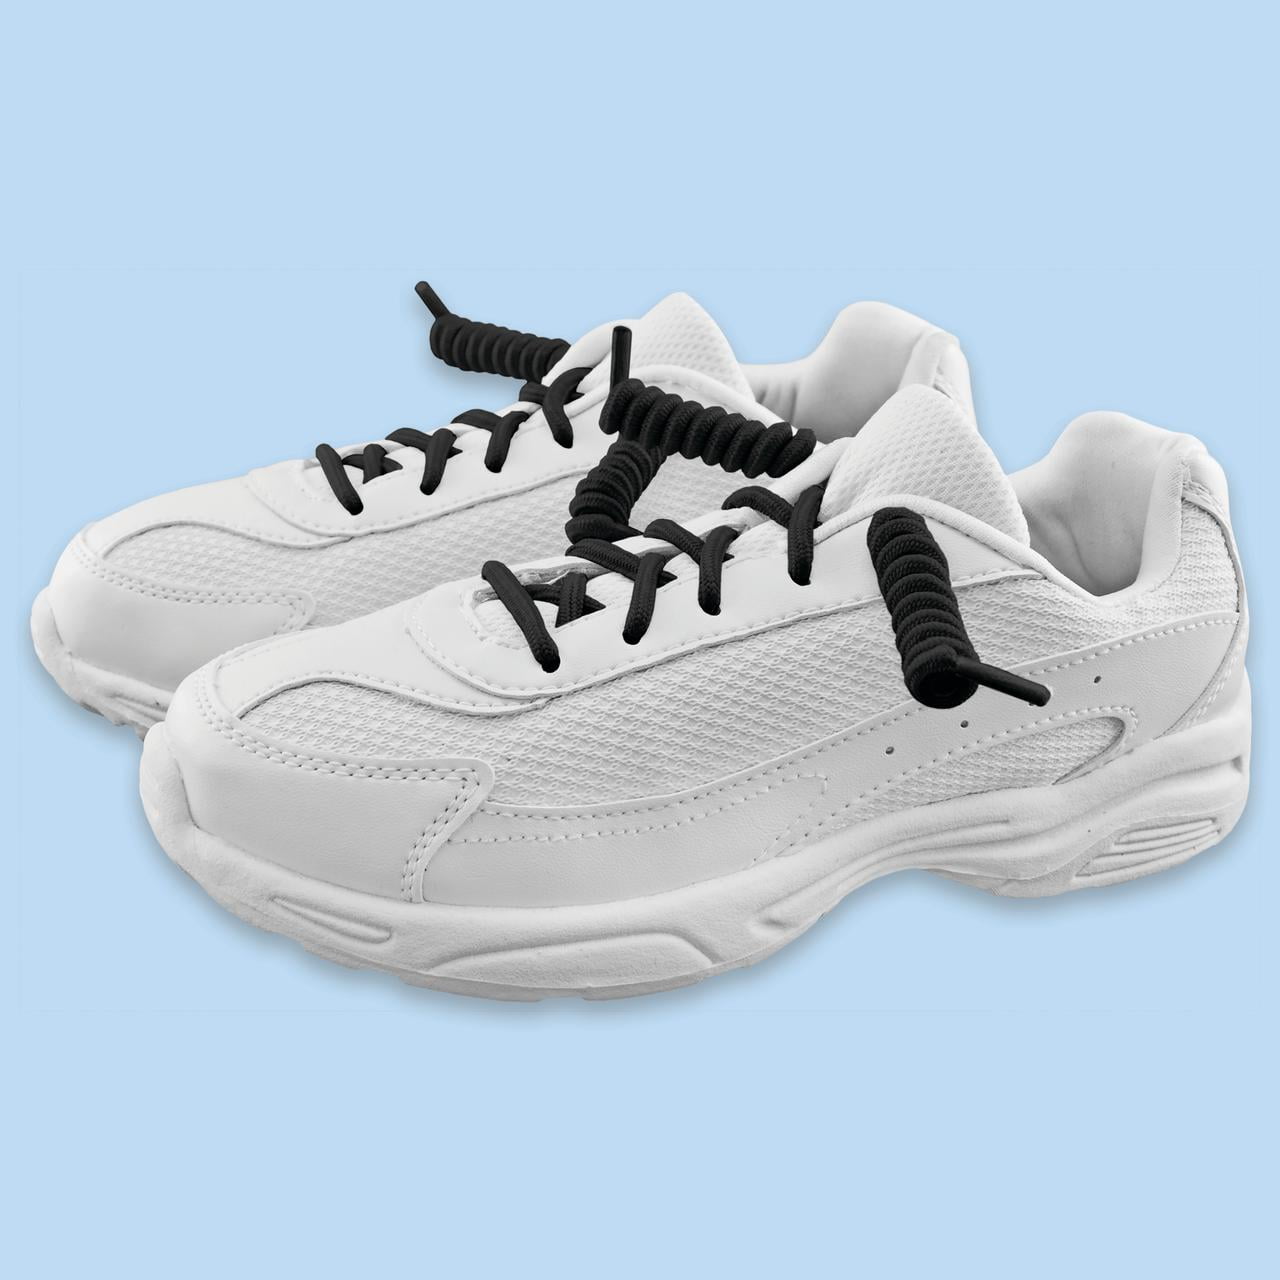 Delta Plus Shoes – Shoe Polyester Cotton Sole Polyurethane Size 4 UK Grey  Blue : Amazon.co.uk: Fashion